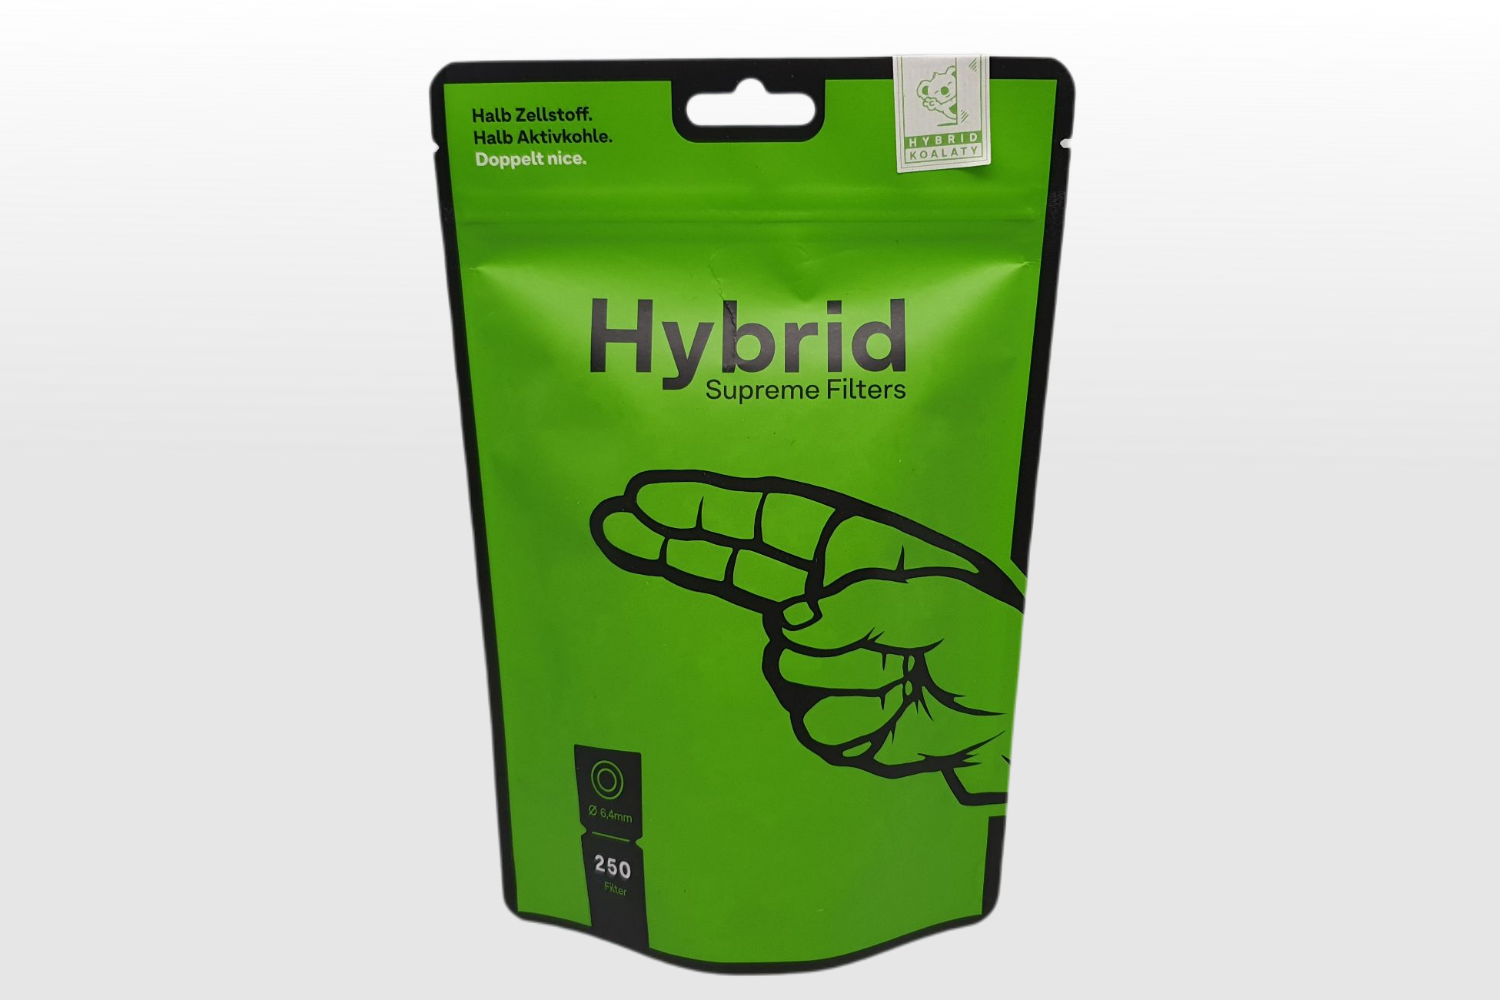 BUFU Hanf & CBD Shop - Rauchzubehör - Supreme Hybrid Filter 250stk - Produktbild Filterverpackung Vorderseite